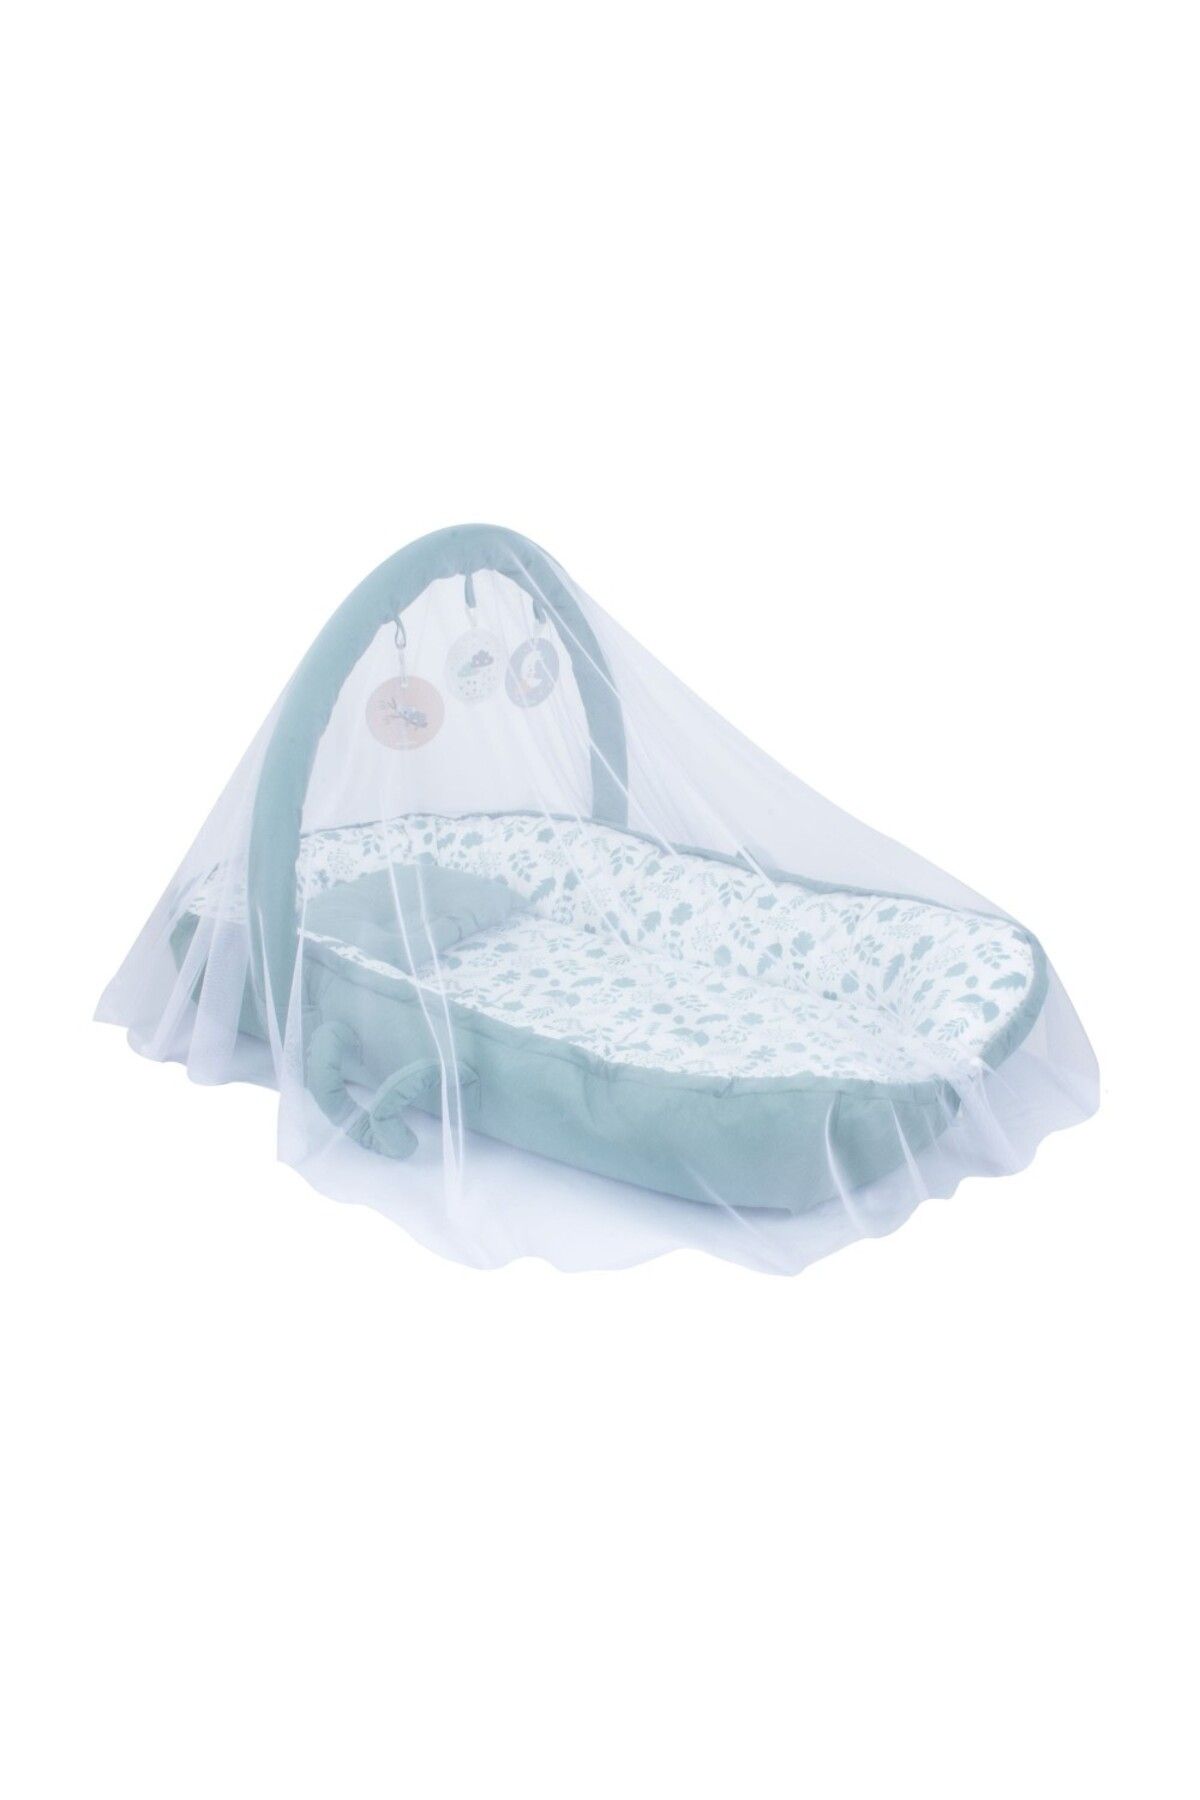 Sevi Bebe Çok Fonksiyonlu Anne Yanı Reflu Yatağı Art-276 Yaprak Desen